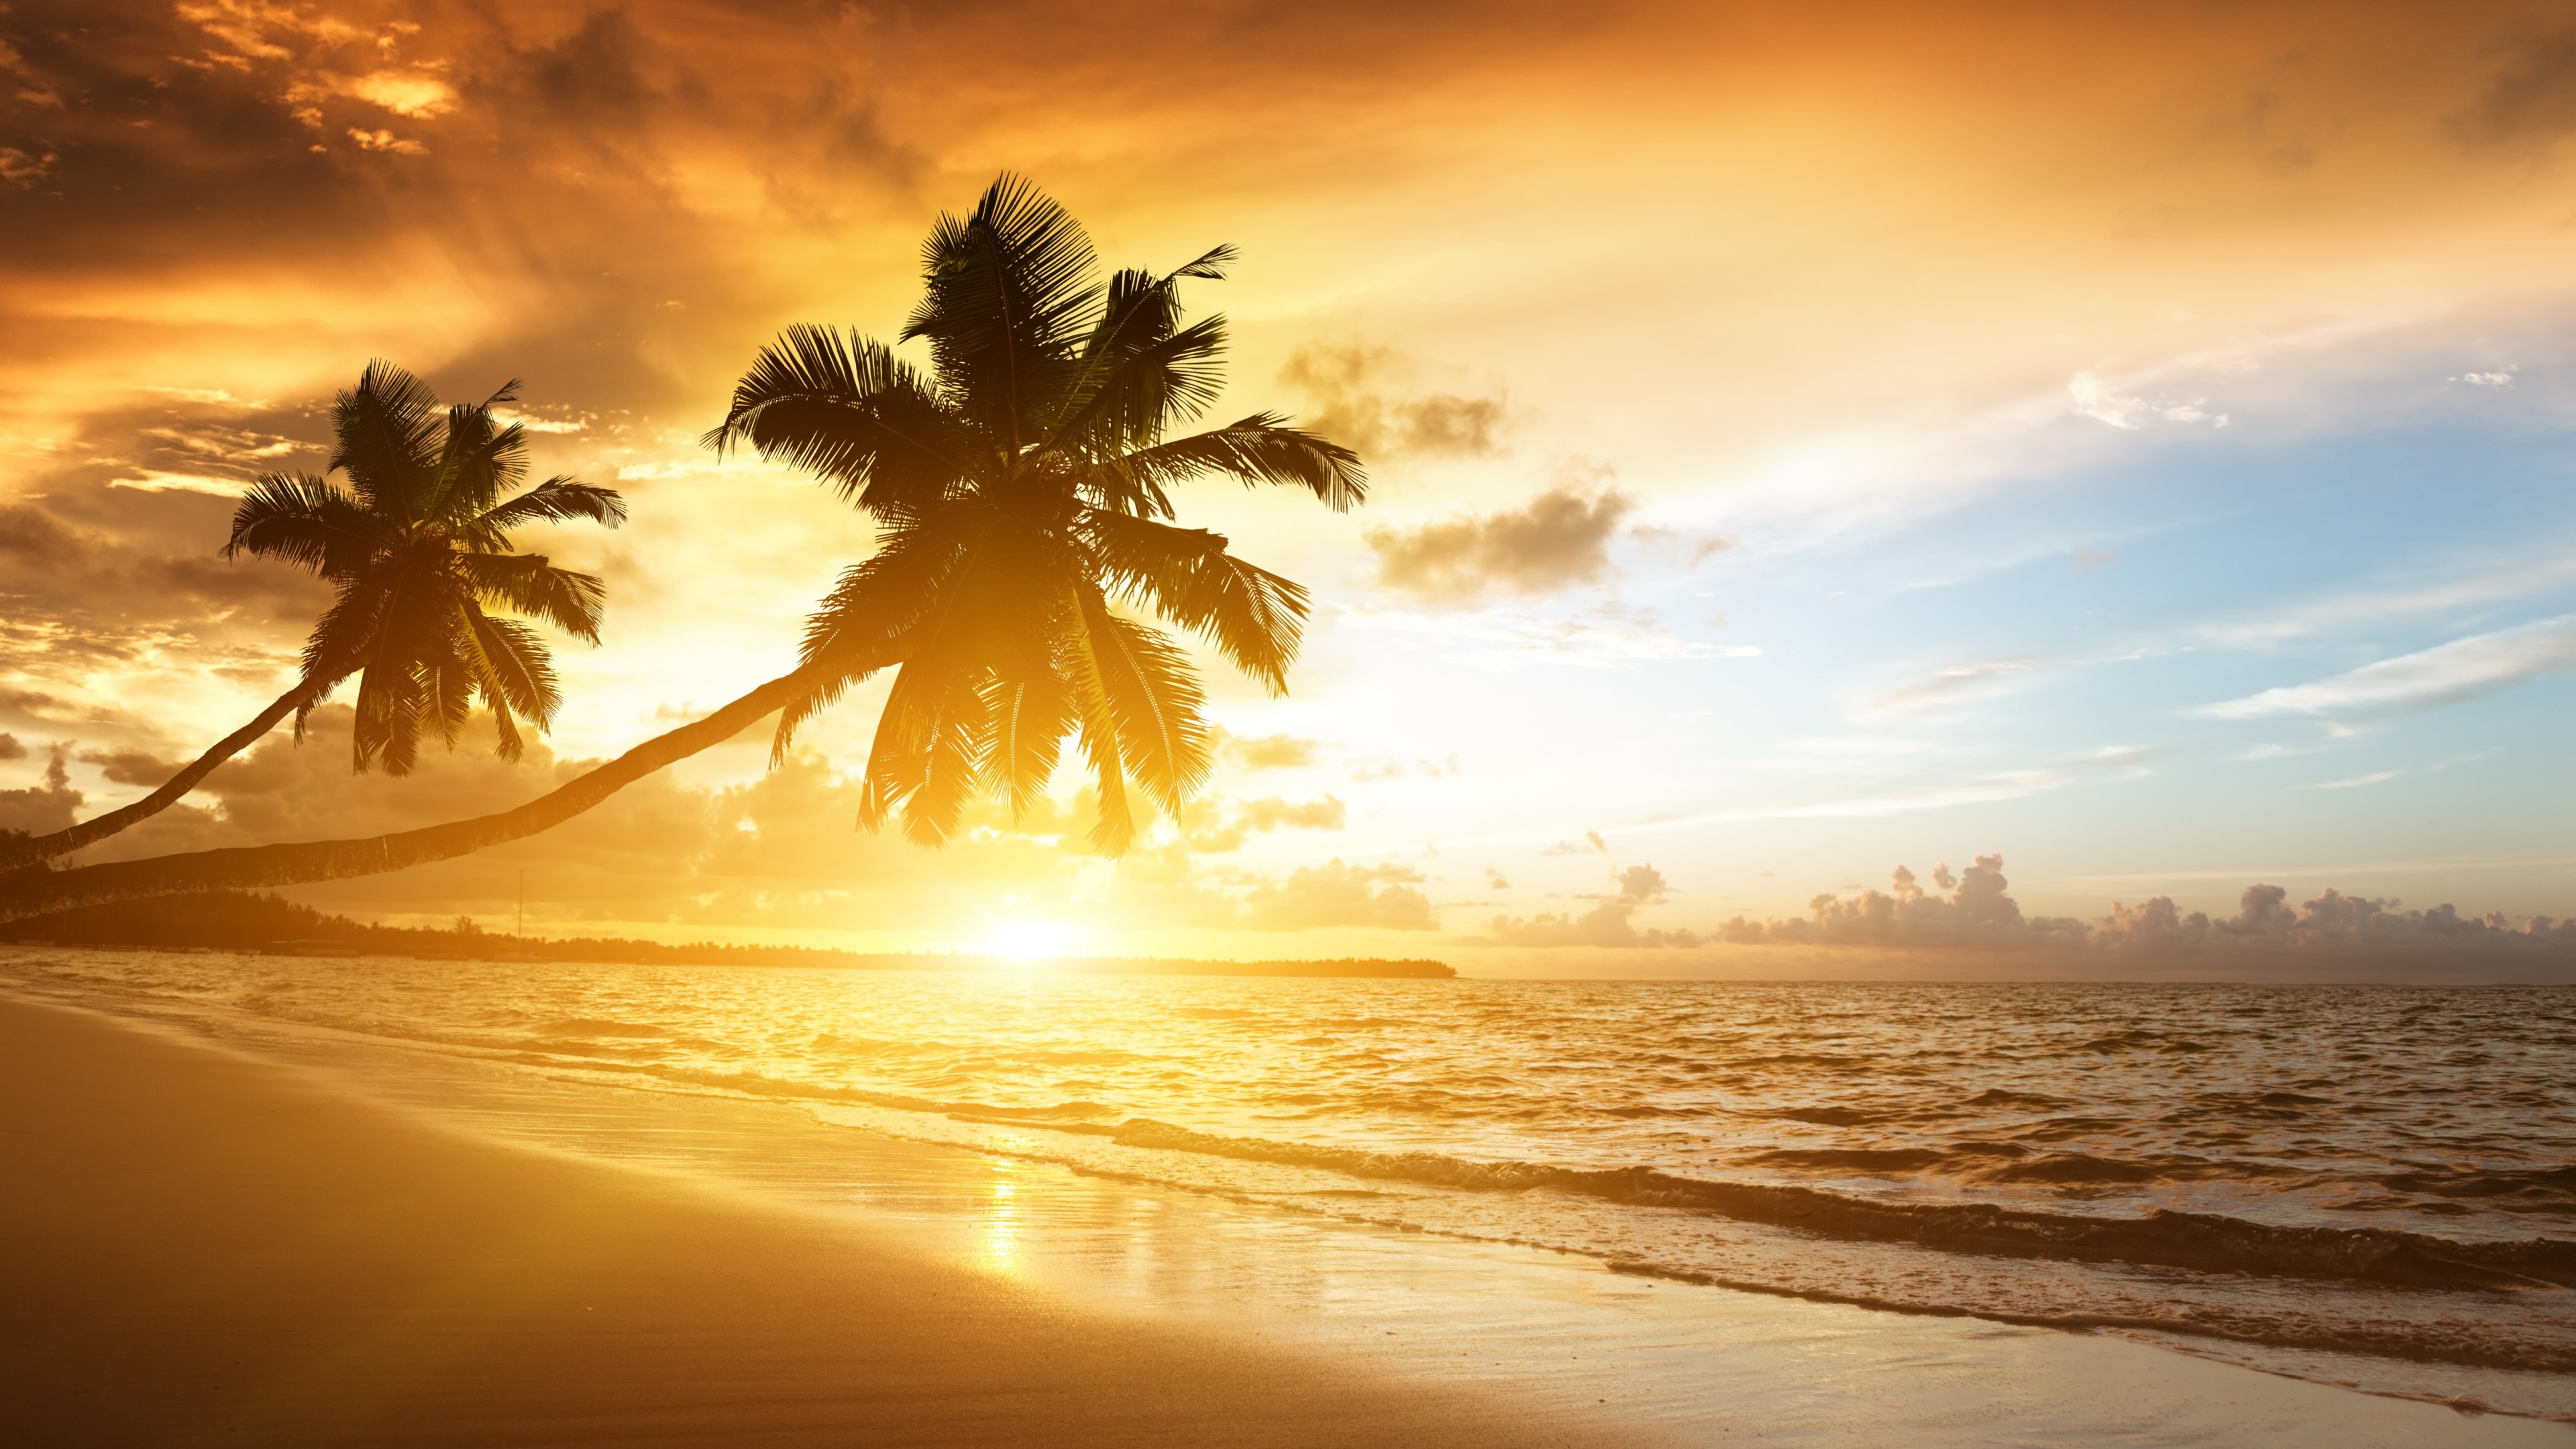 Beach 5K wallpaper, Ocean sunset, Palm trees, Vacation journey, 3840x2160 4K Desktop